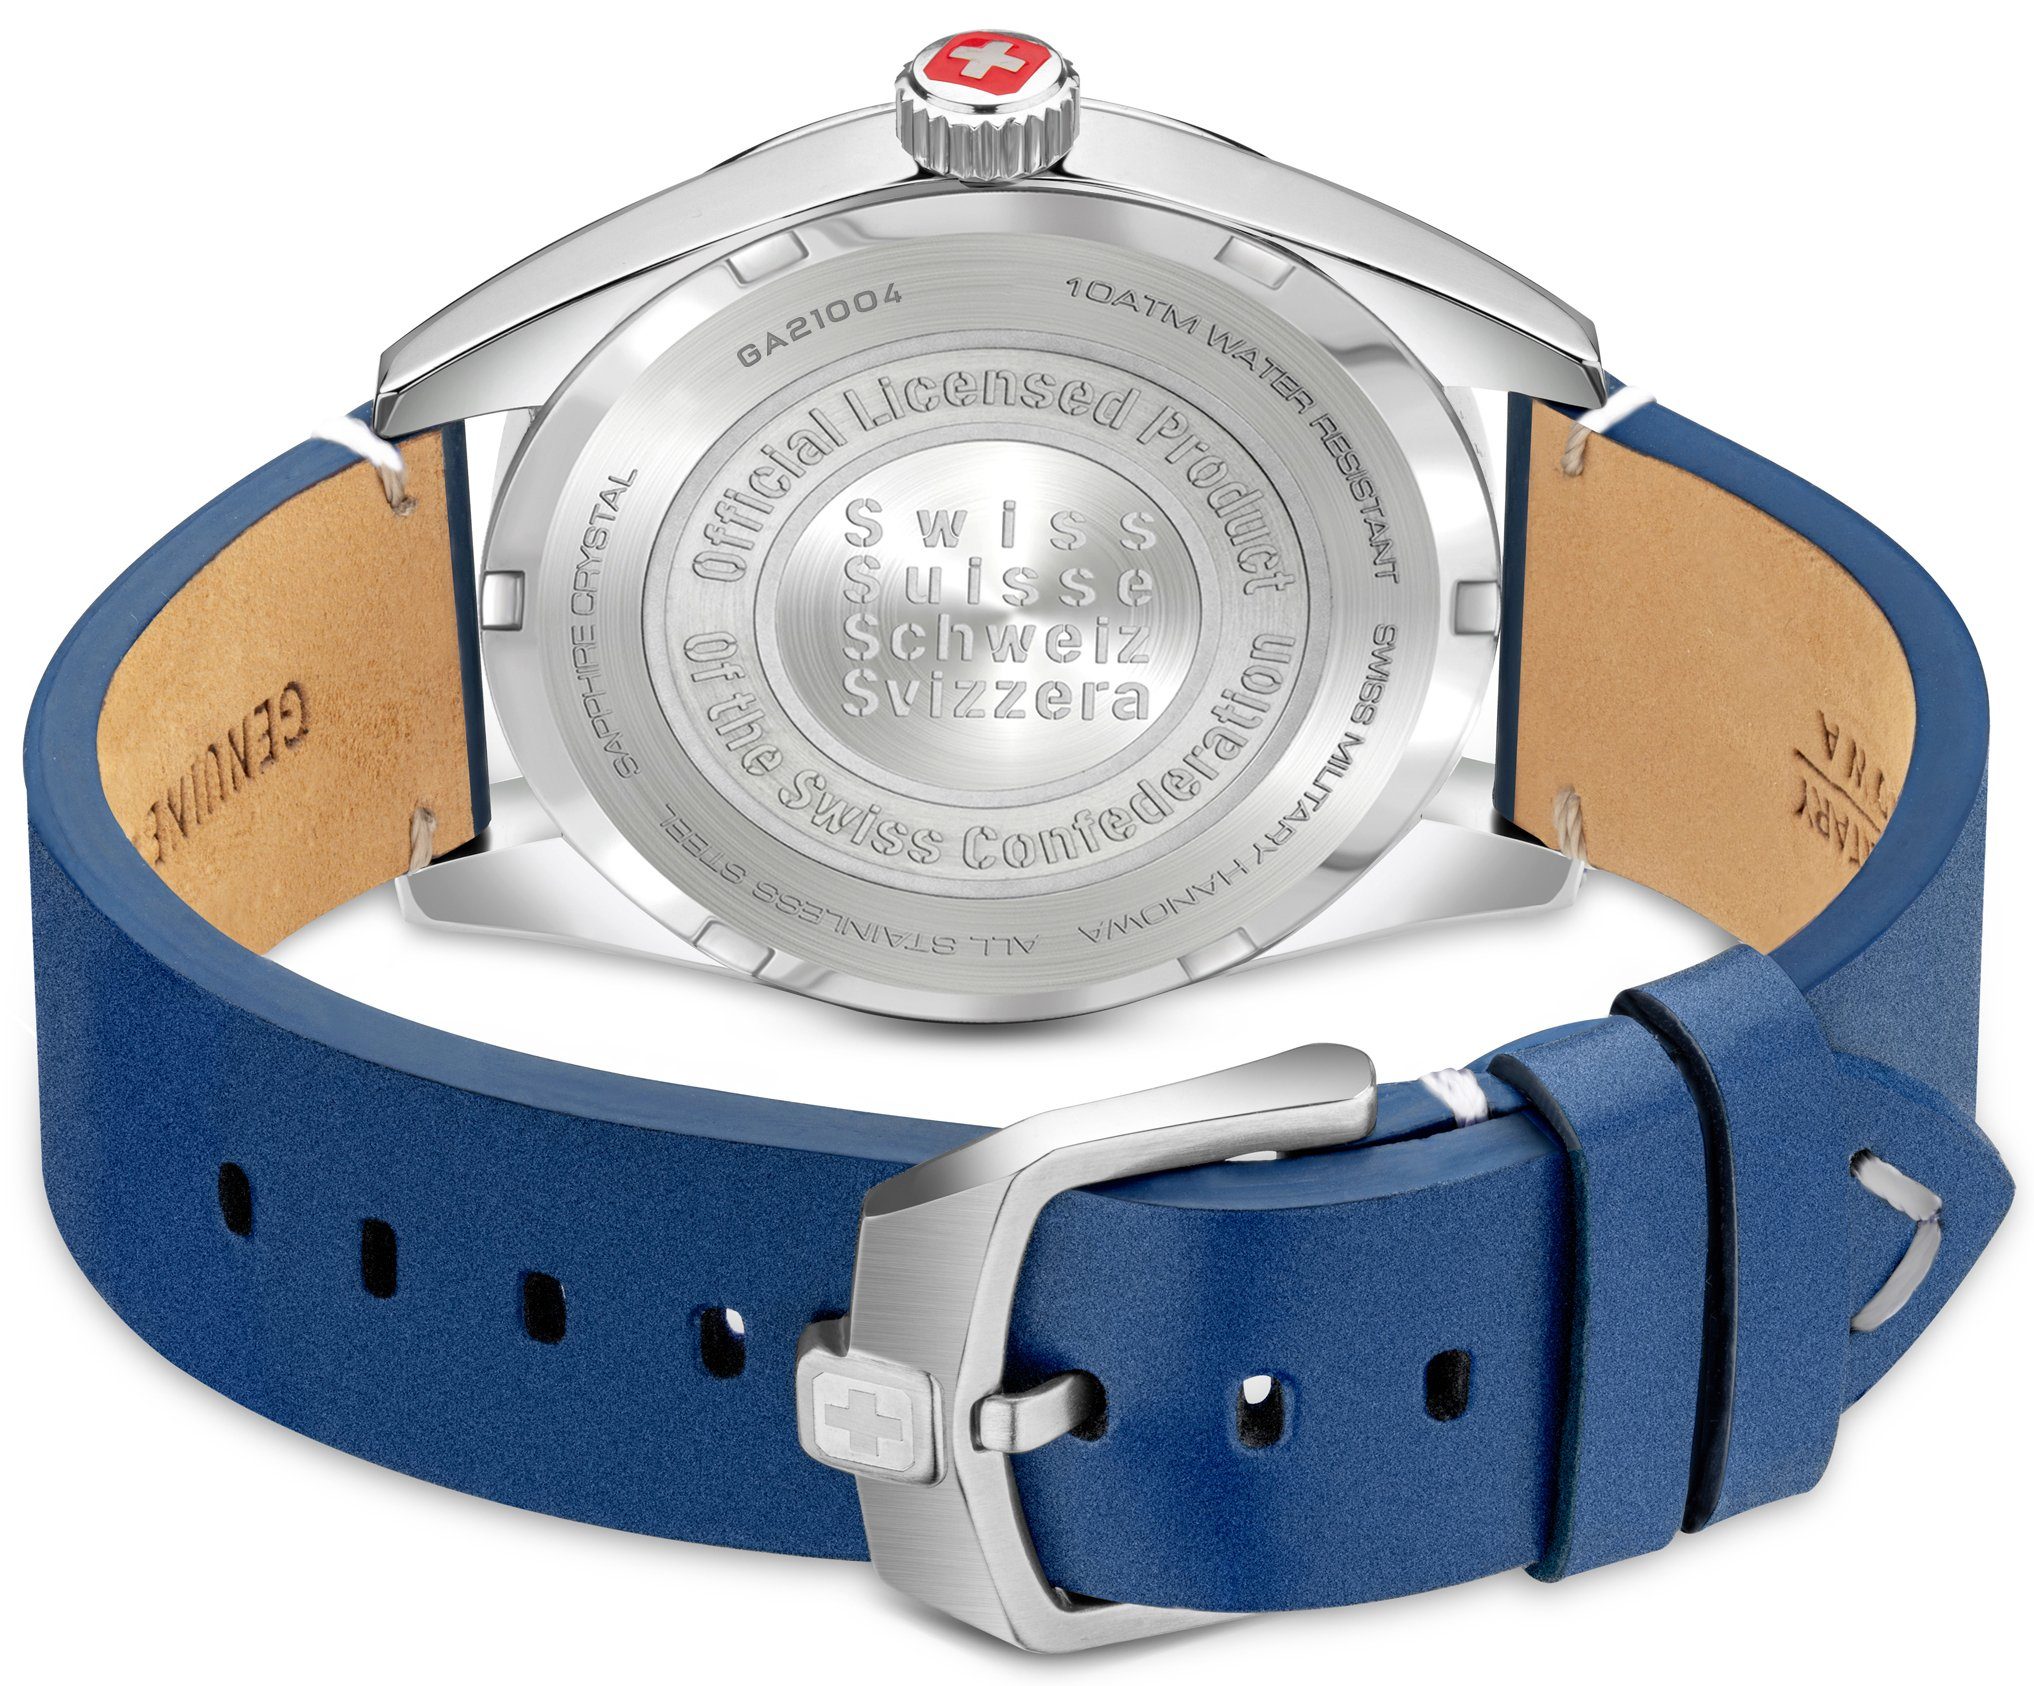 Military SMWGA2100403 Hanowa weiß blau, FALCON, Swiss Uhr Schweizer